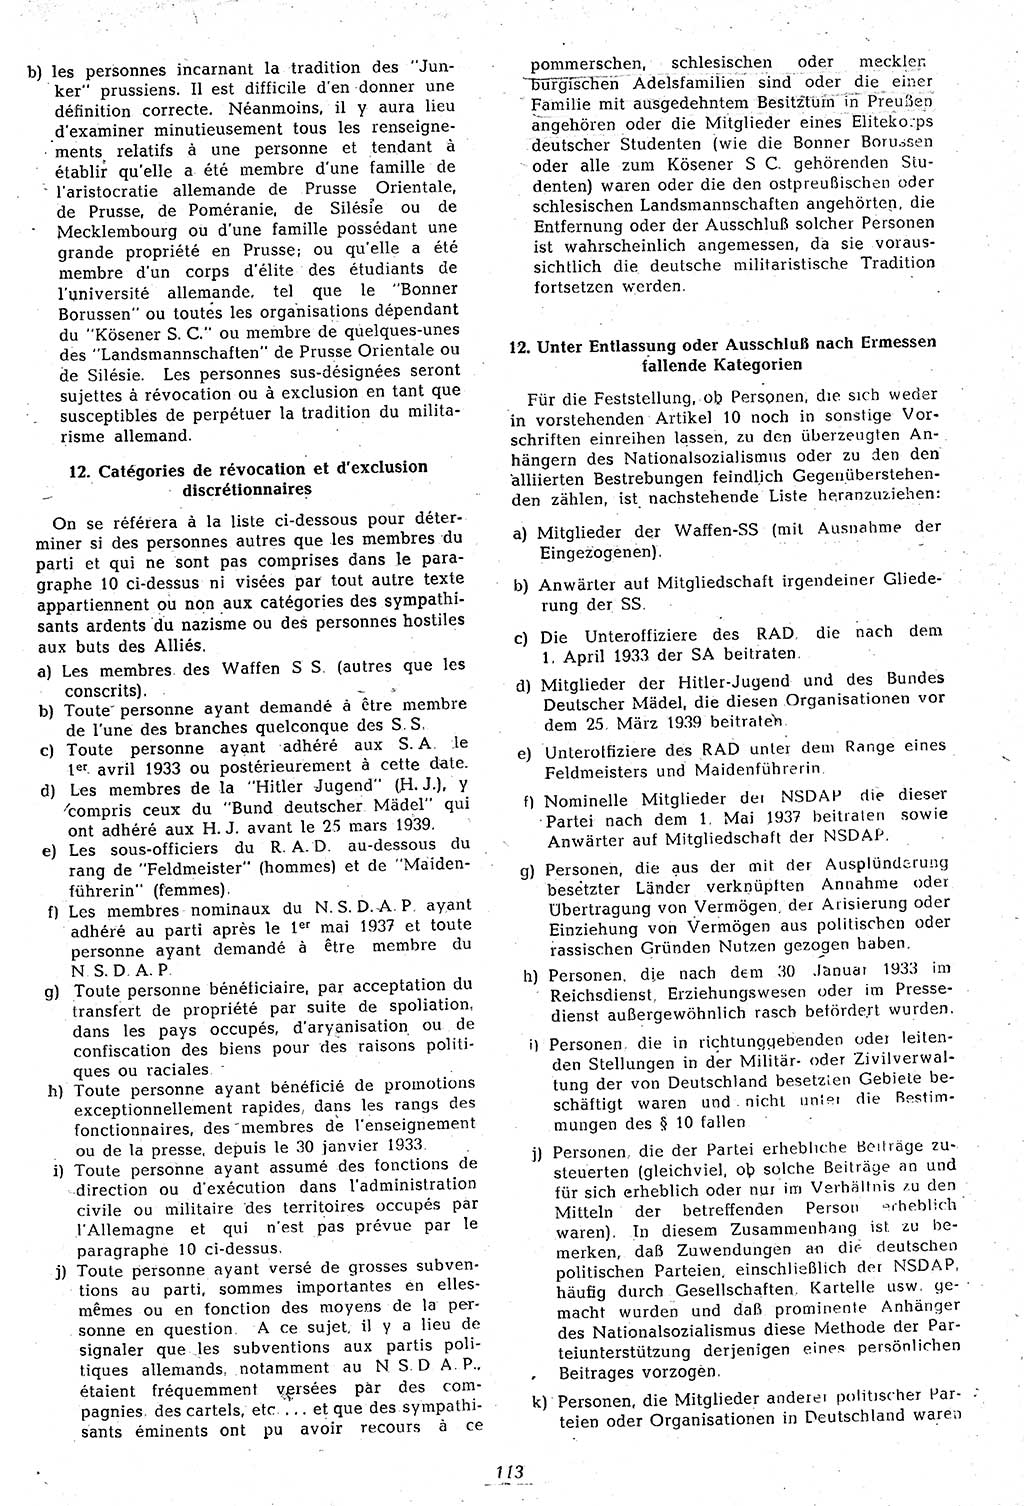 Amtsblatt des Kontrollrats (ABlKR) in Deutschland 1946, Seite 113/2 (ABlKR Dtl. 1946, S. 113/2)